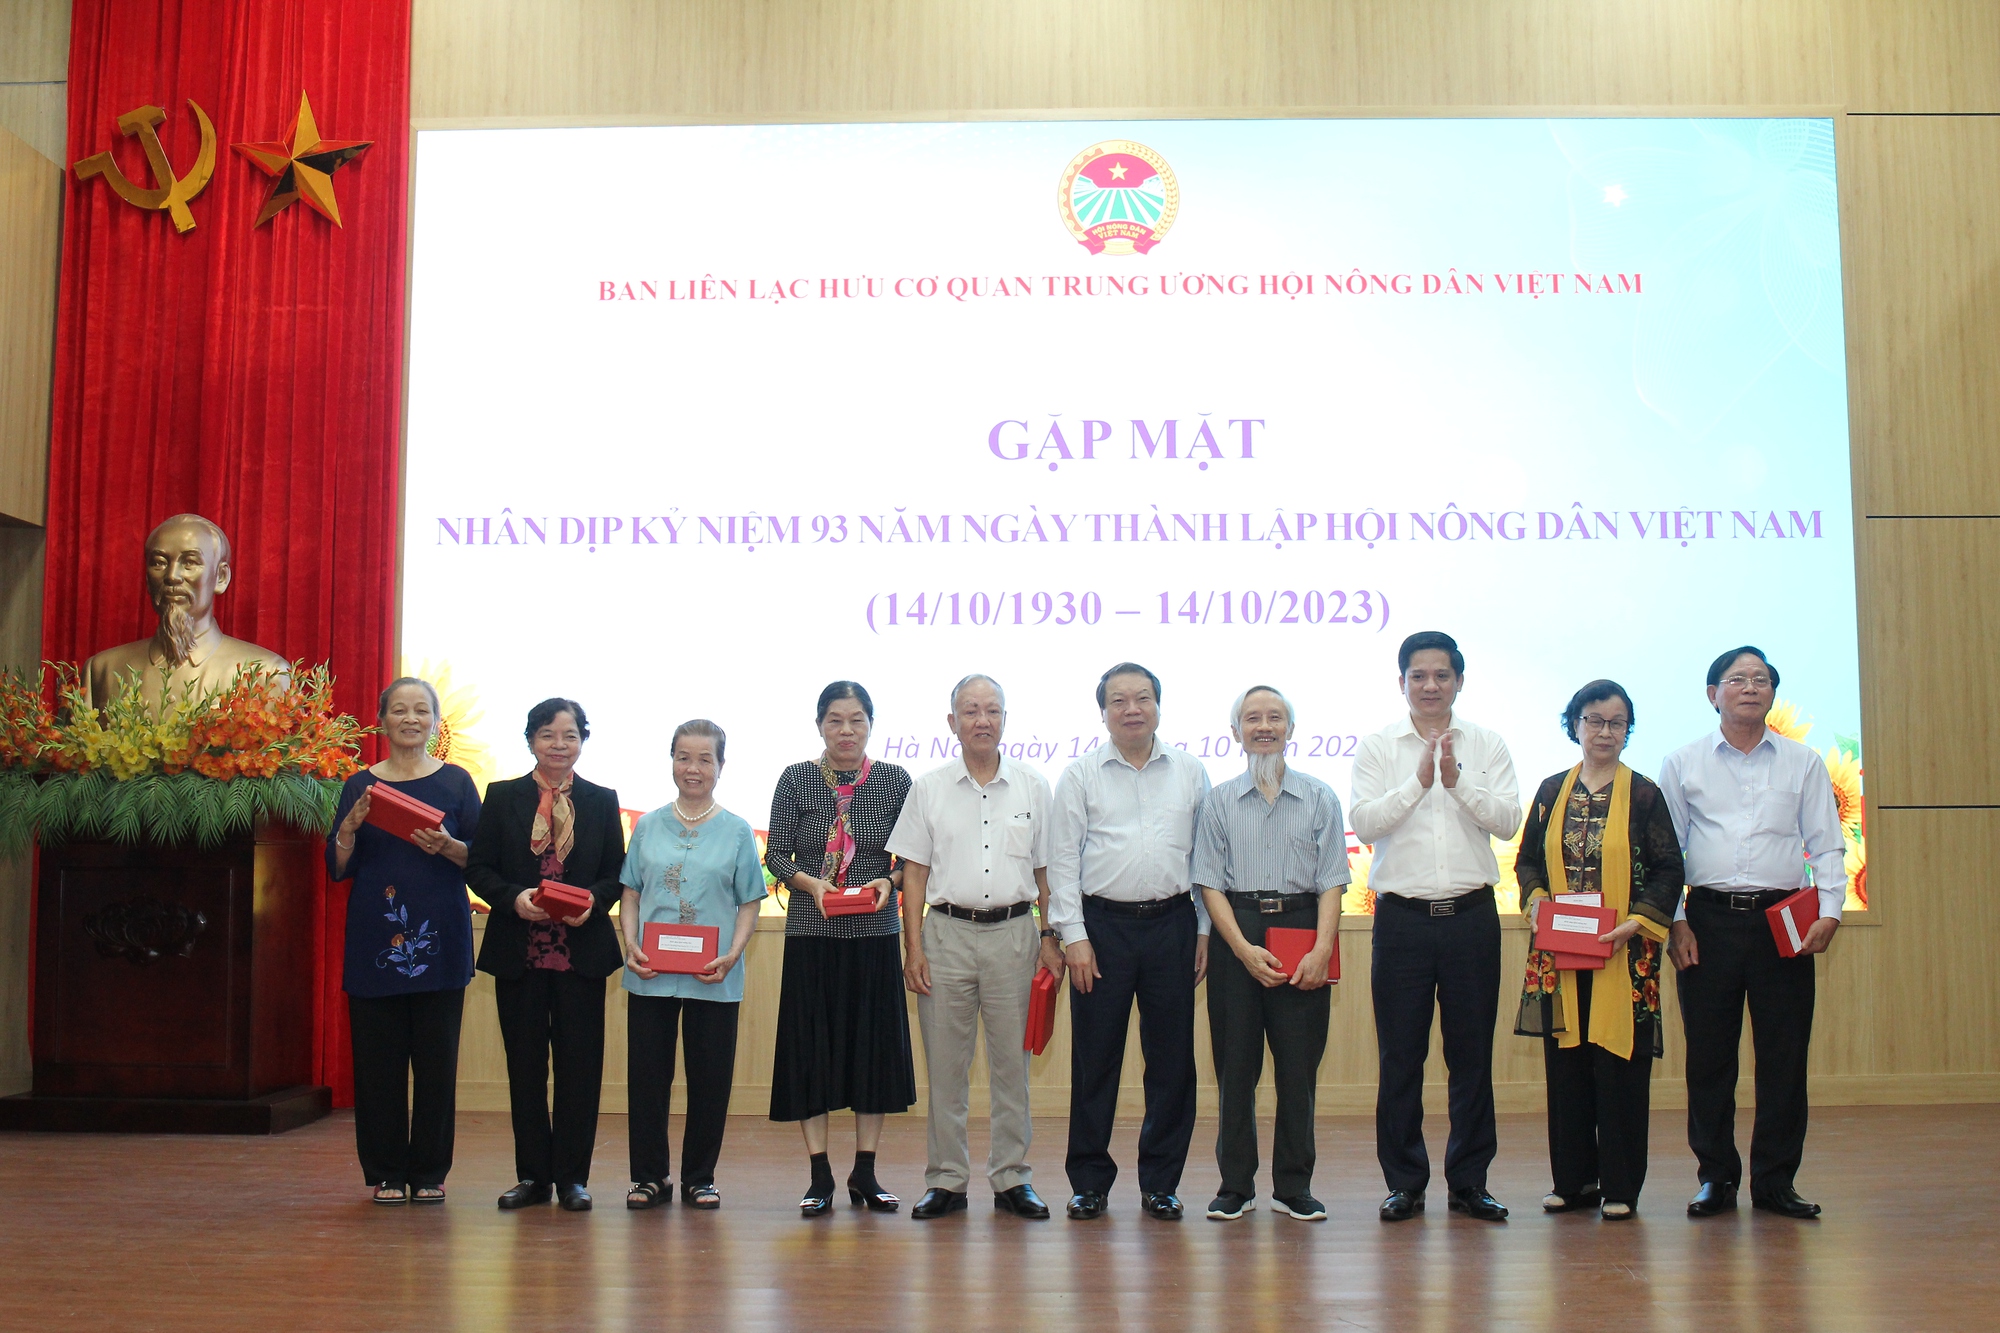 Trung ương Hội Nông dân Việt Nam gặp mặt cán bộ hưu trí nhân dịp kỷ niệm 93 năm ngày thành lập Hội NDVN - Ảnh 2.